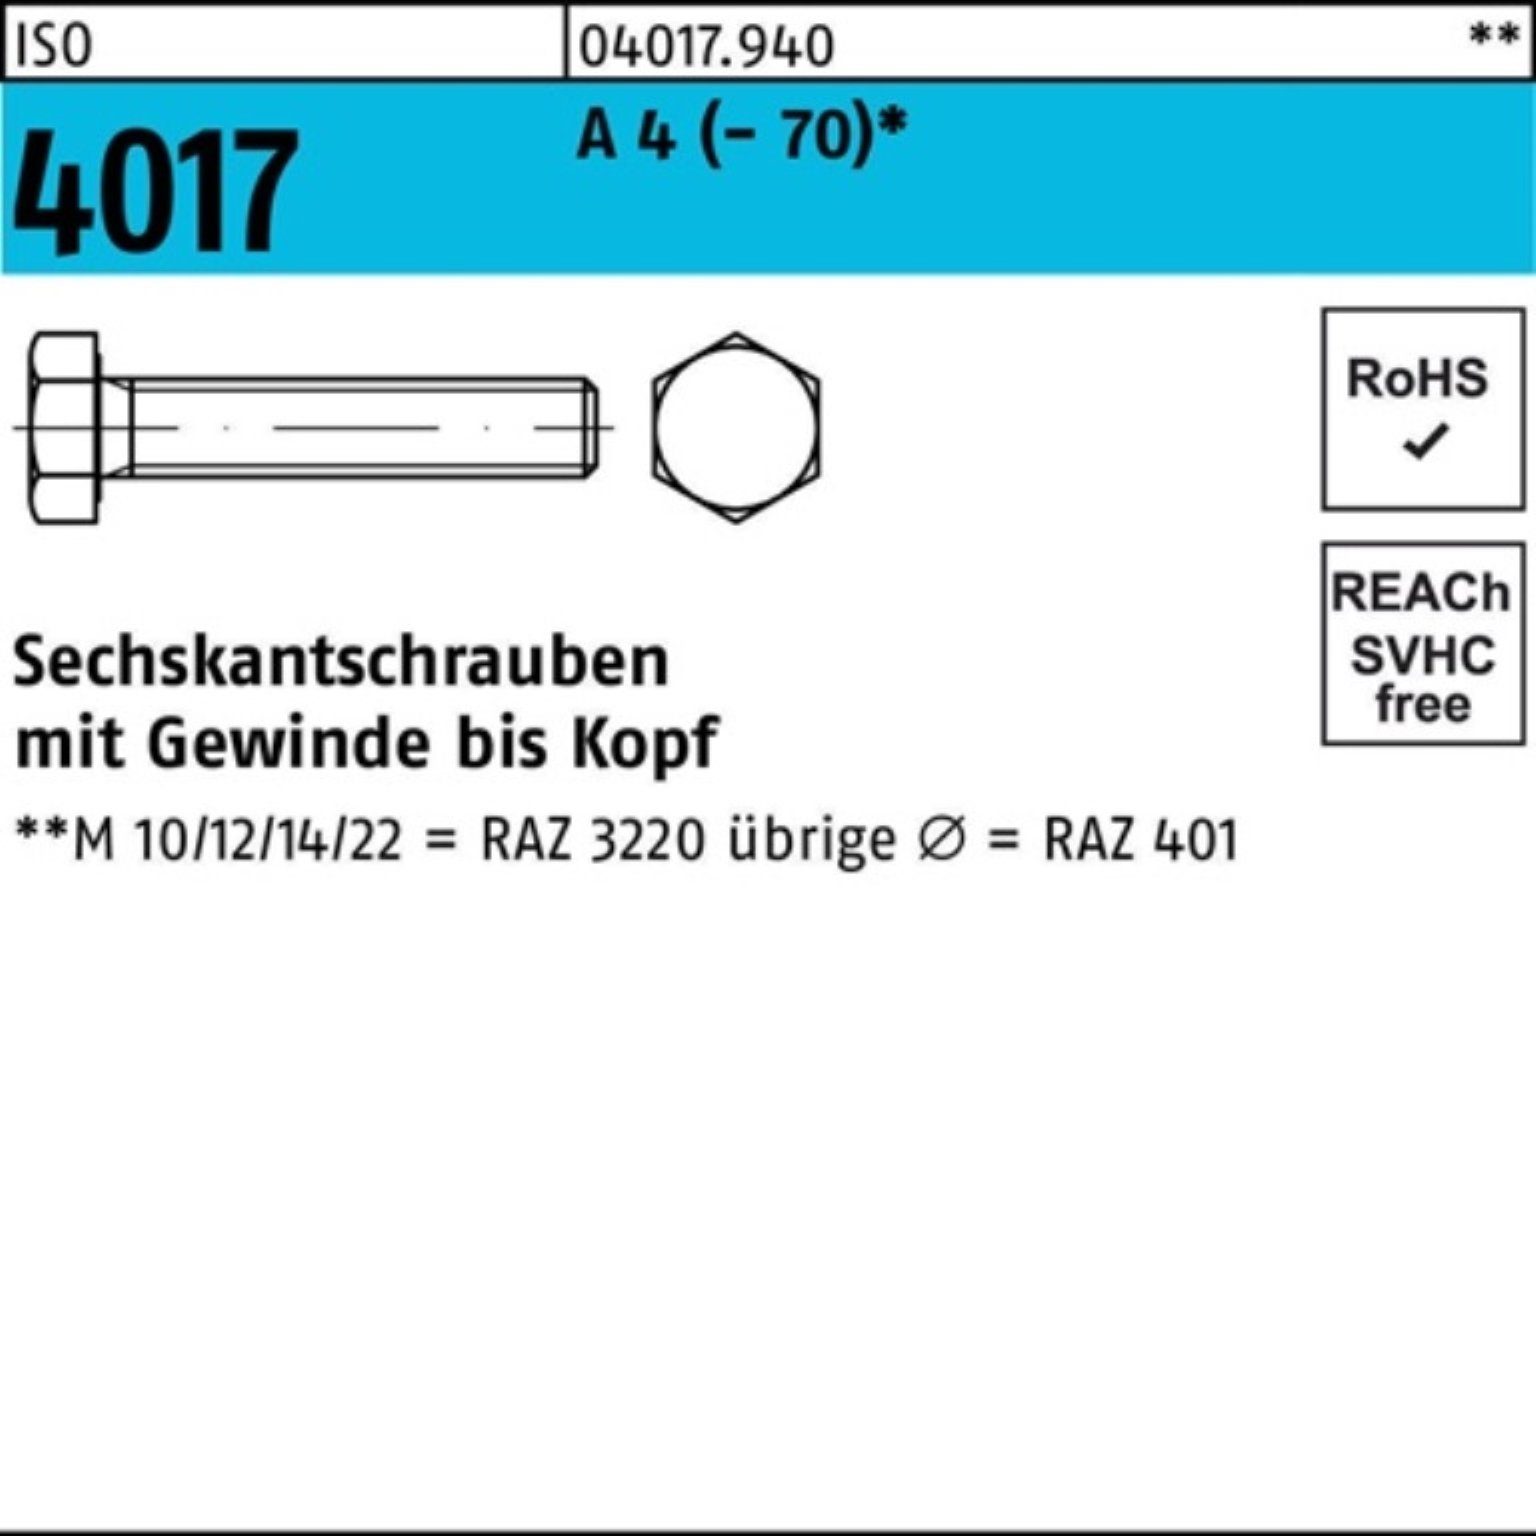 Bufab Sechskantschraube 100er Pack Sechskantschraube ISO 4017 VG M24x 40 A 4 (70) 1 Stück I